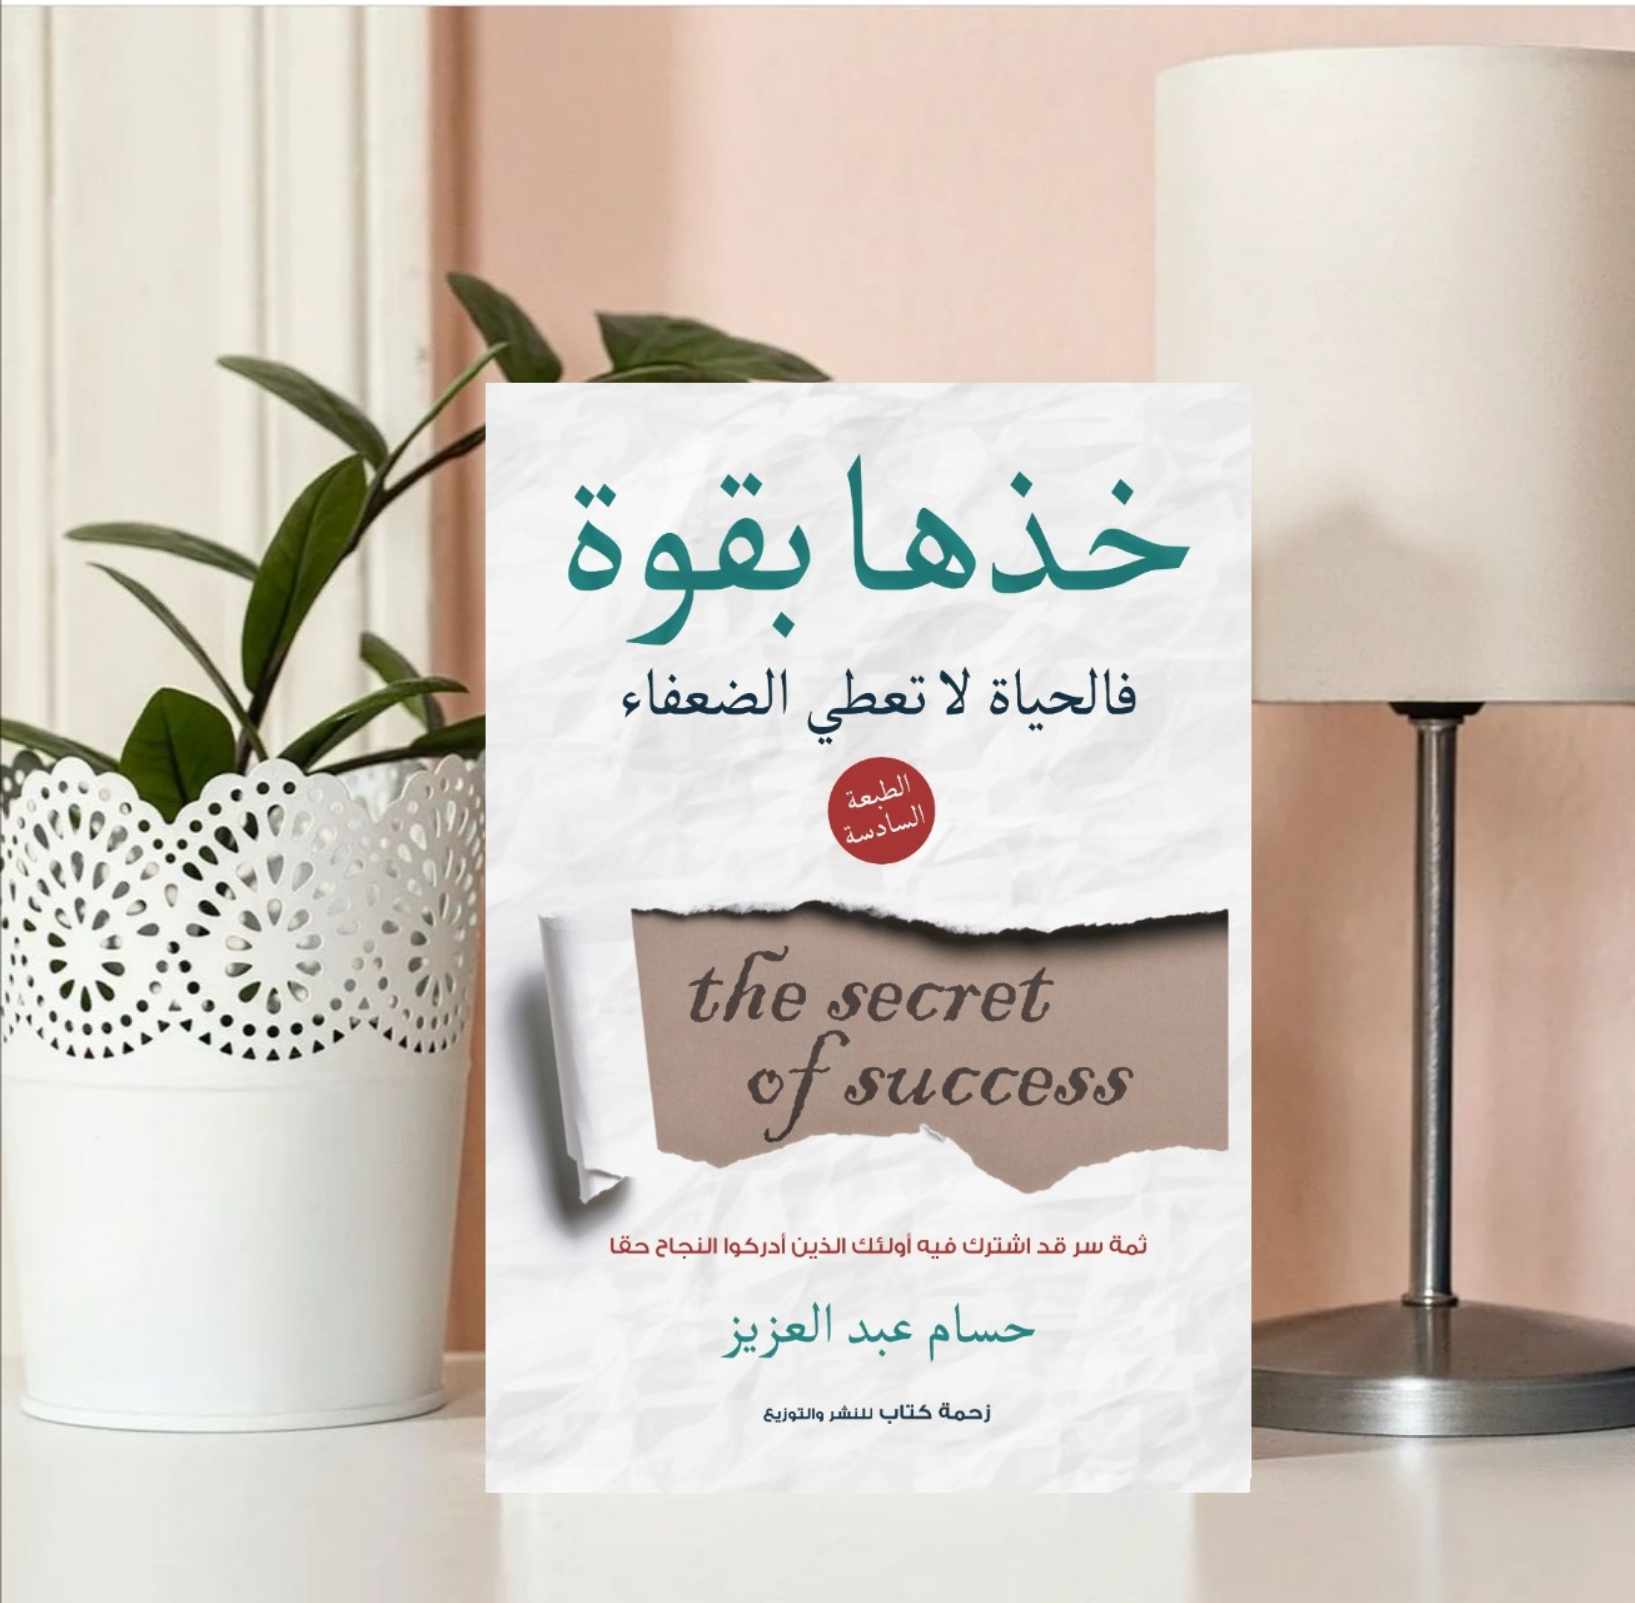  كتاب خذها بقوة للمهندس حسام عبد العزيز (2)